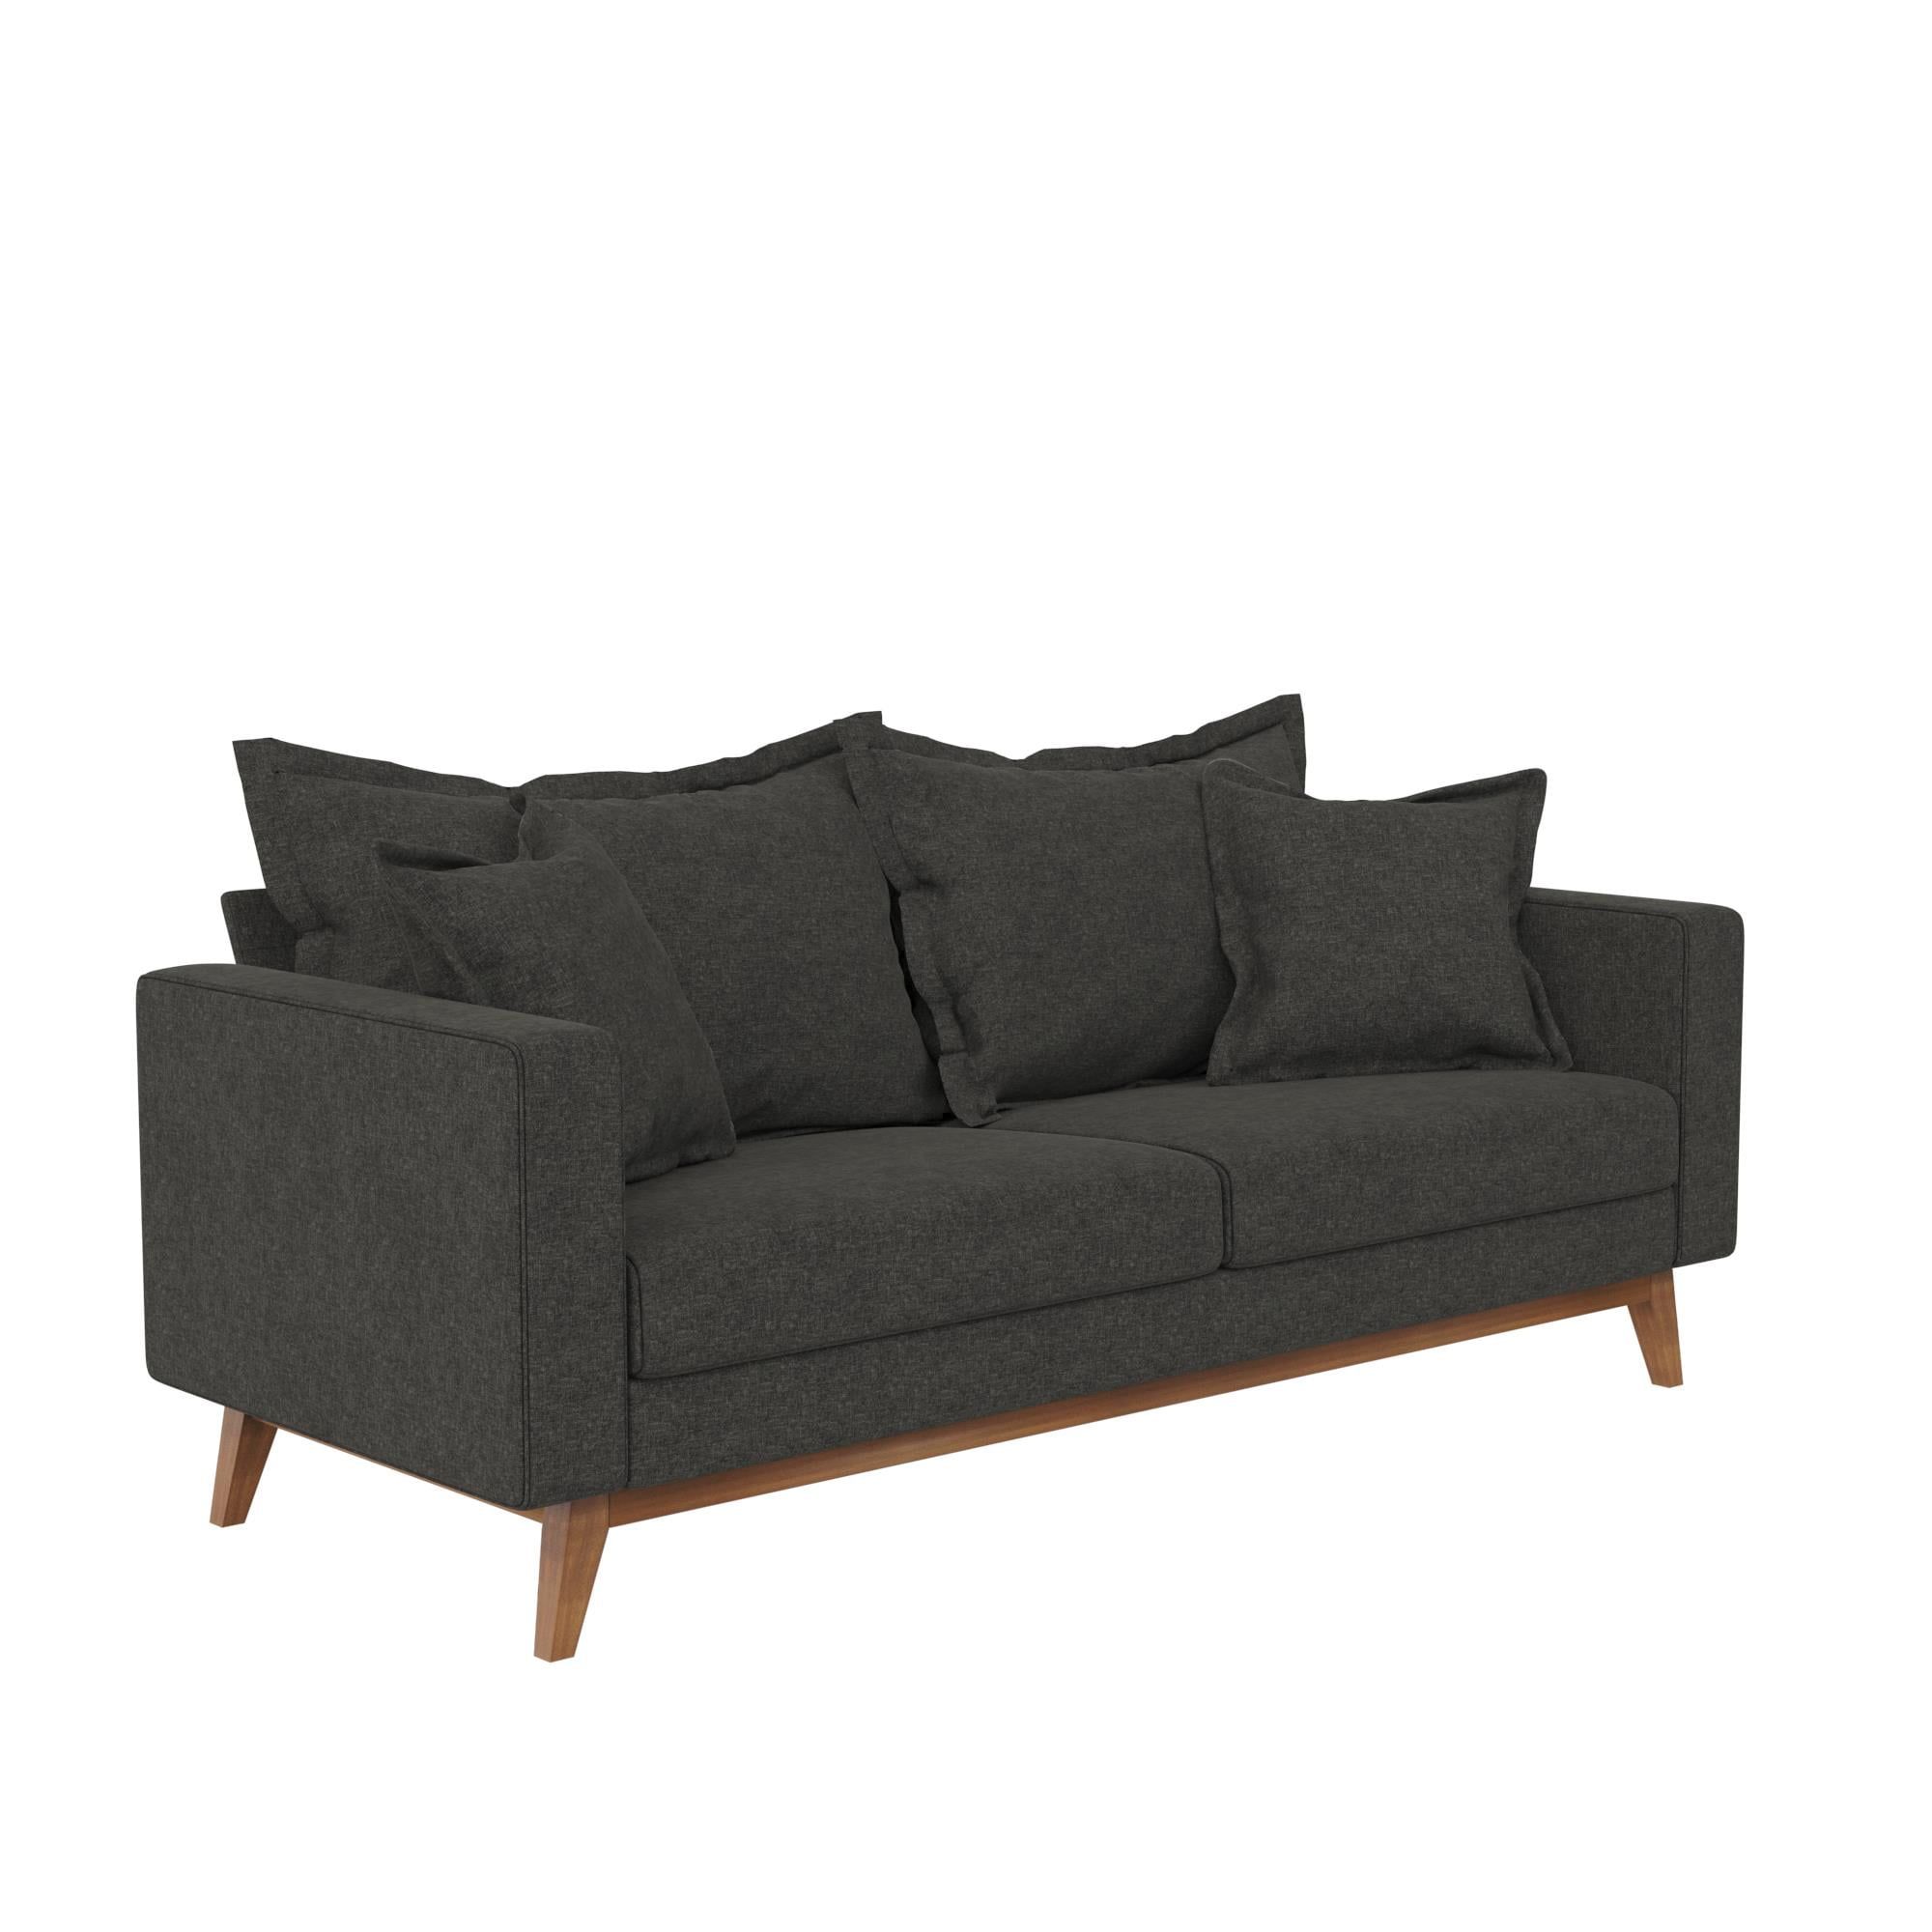 Dhp Miriam Pillowback Wood Base Sofa, Gray Linen – Walmart With Sofas With Pillowback Wood Bases (View 16 of 20)